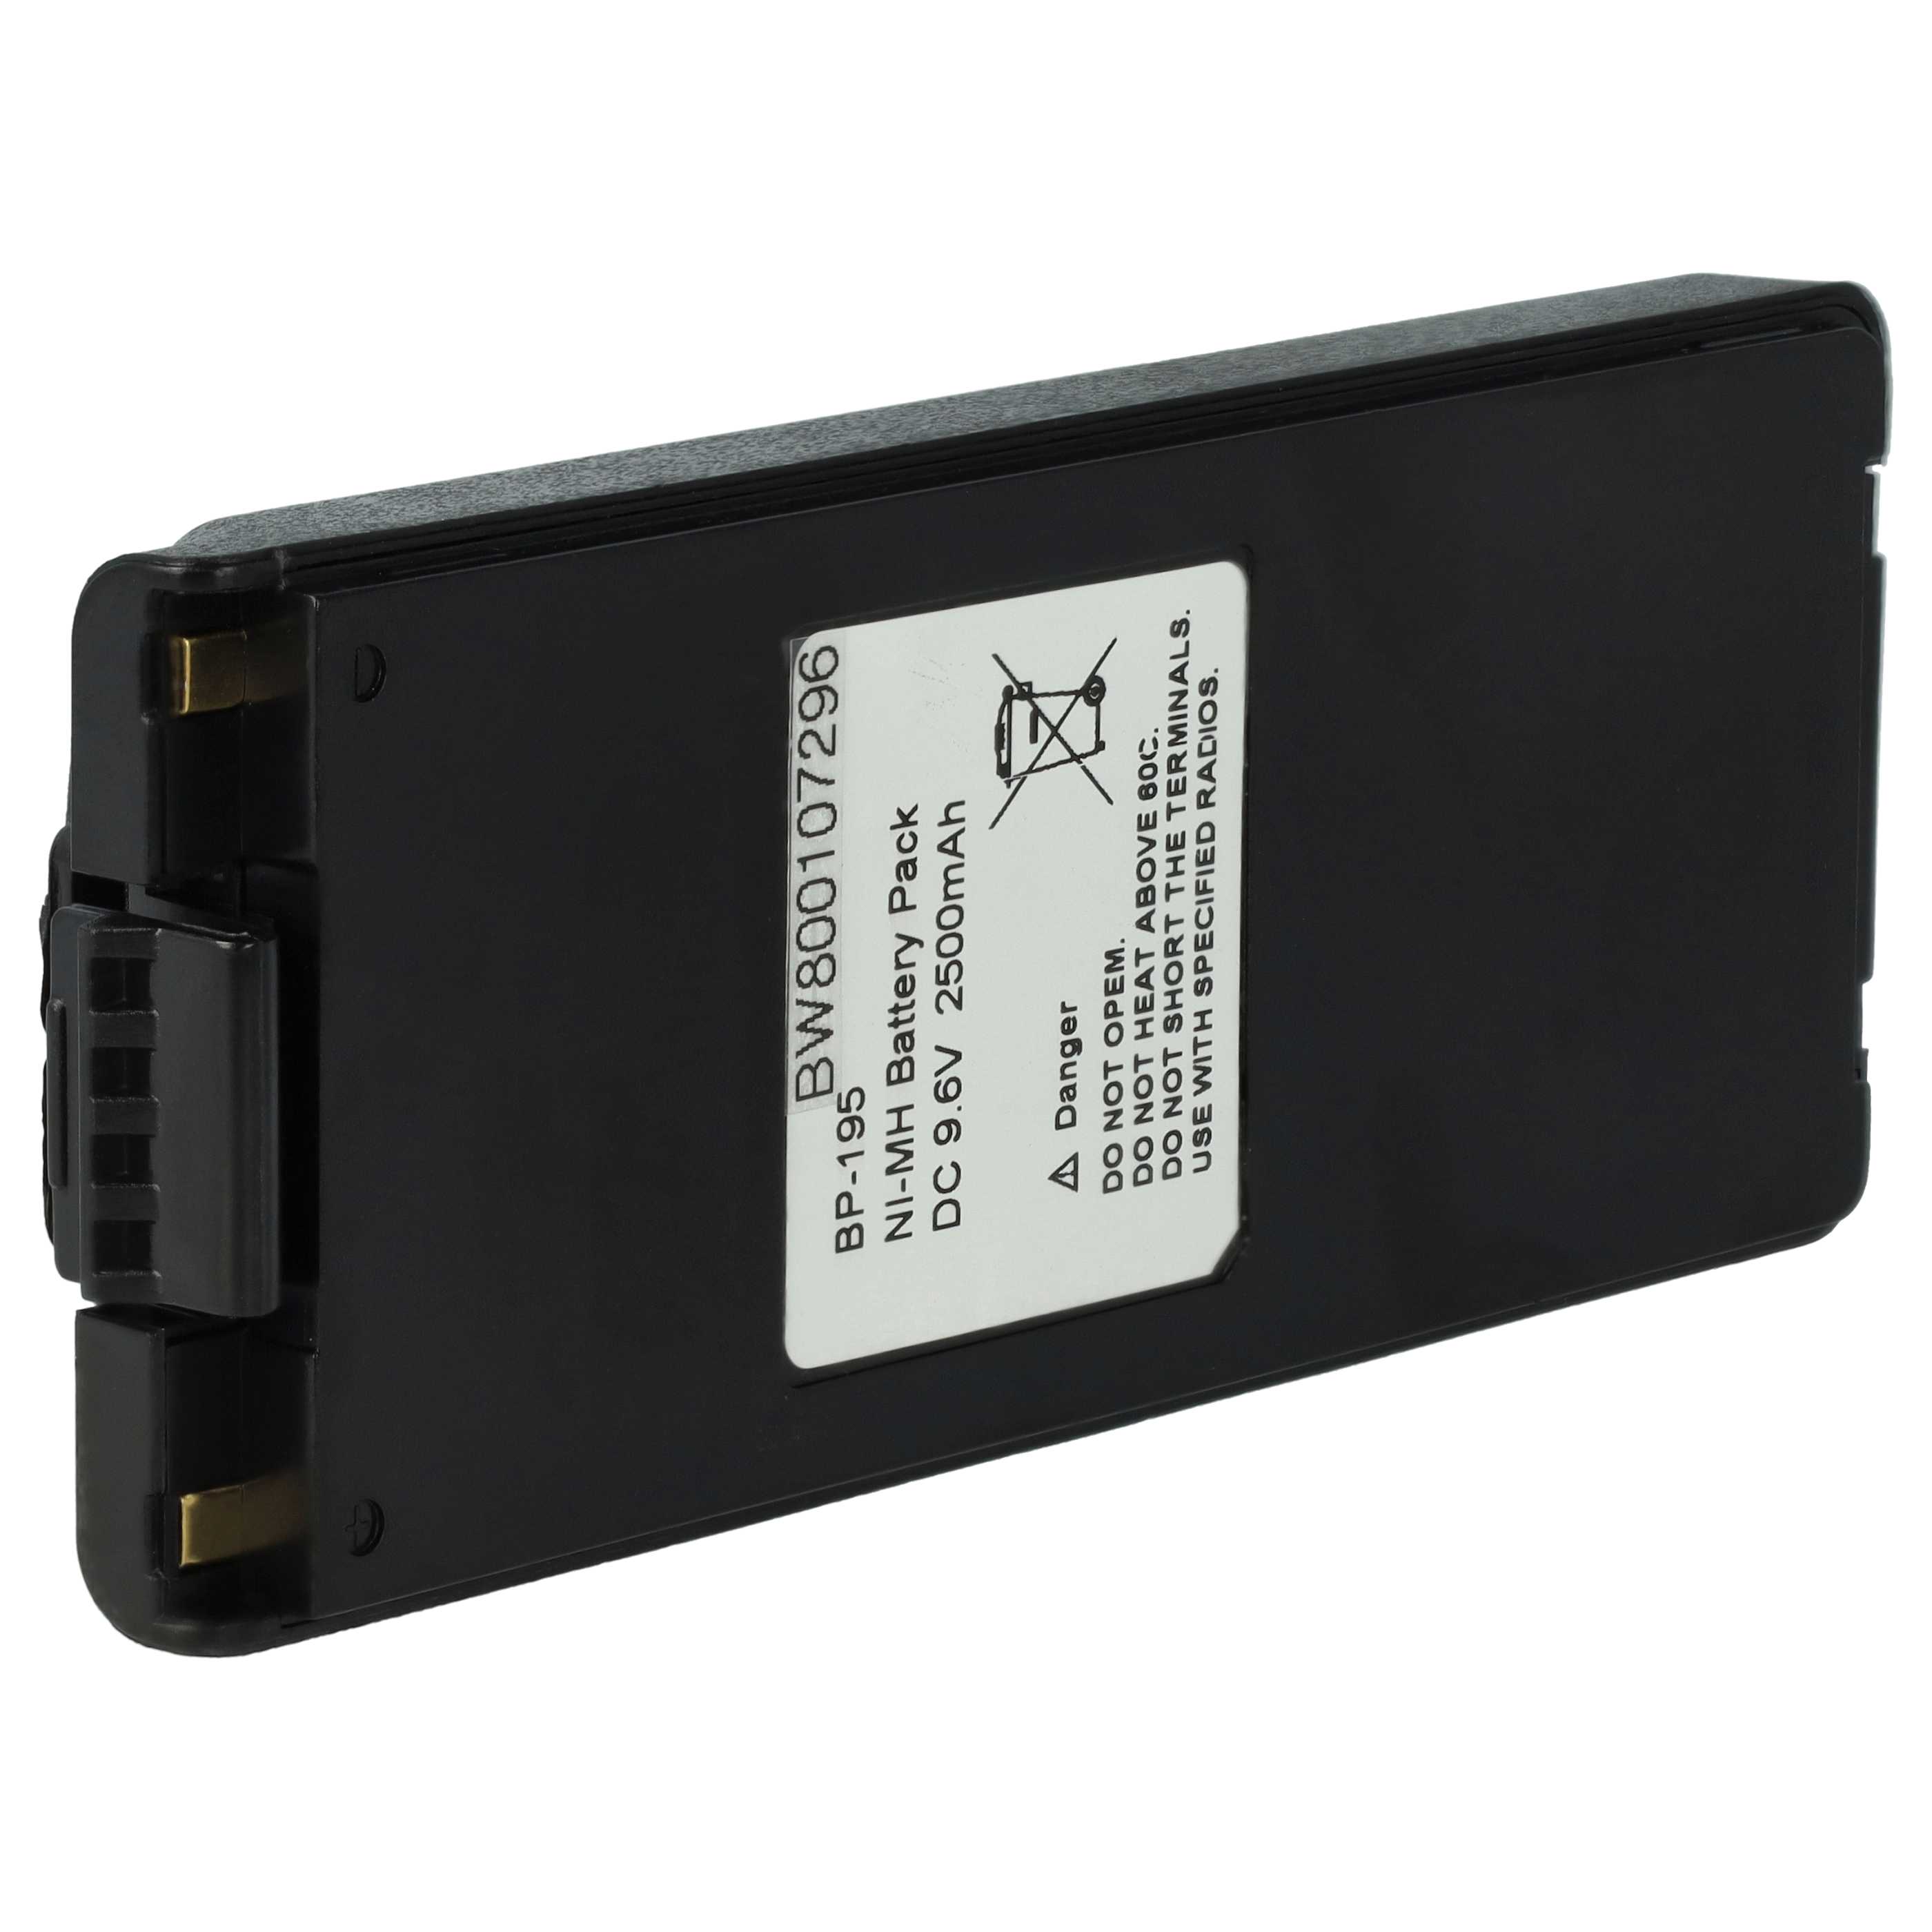 Batterie remplace Icom BP-195, BP-196H, BP-196, BP-196R pour radio talkie-walkie - 2500mAh 9,6V NiMH